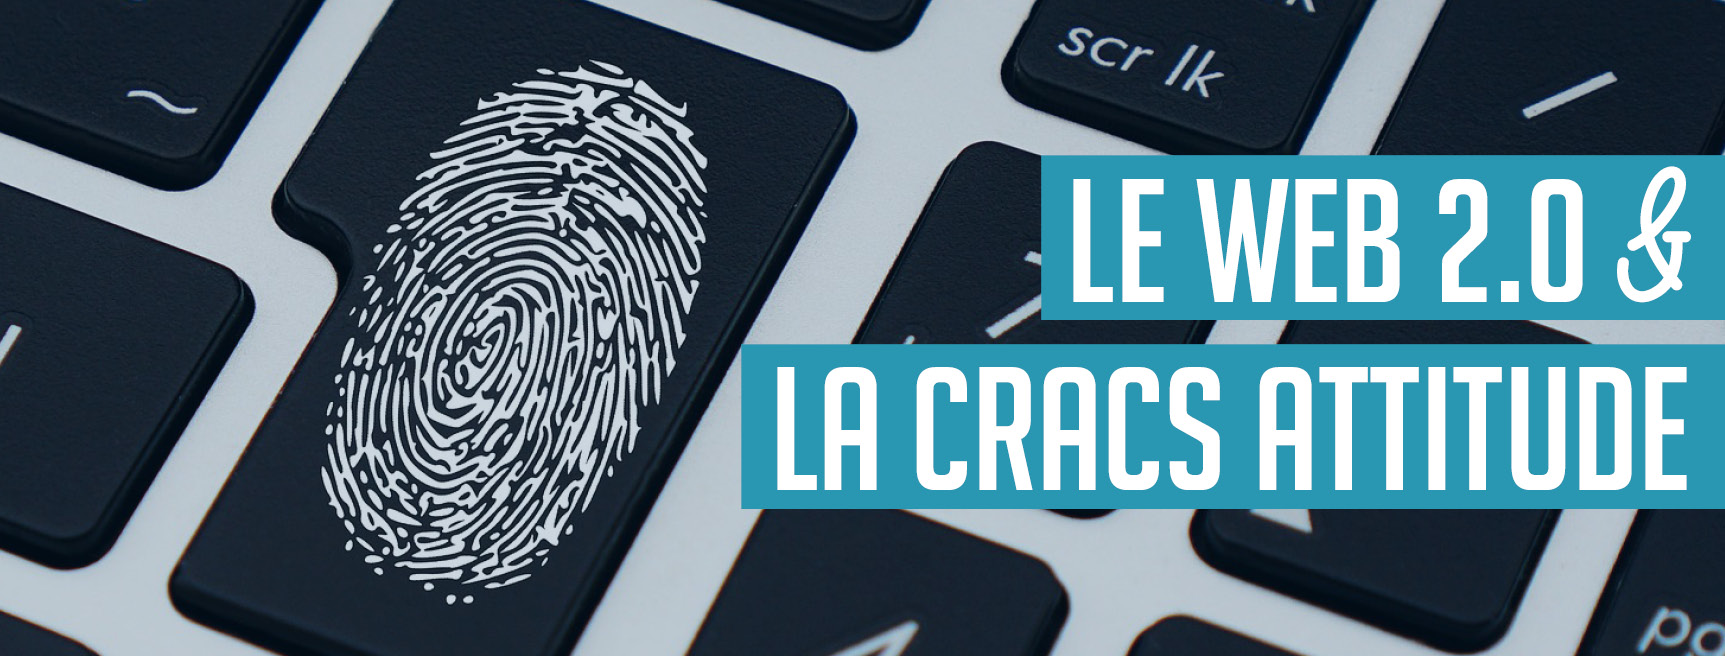 Libr'Actu Le Web 2.0 et la CRACS attitude